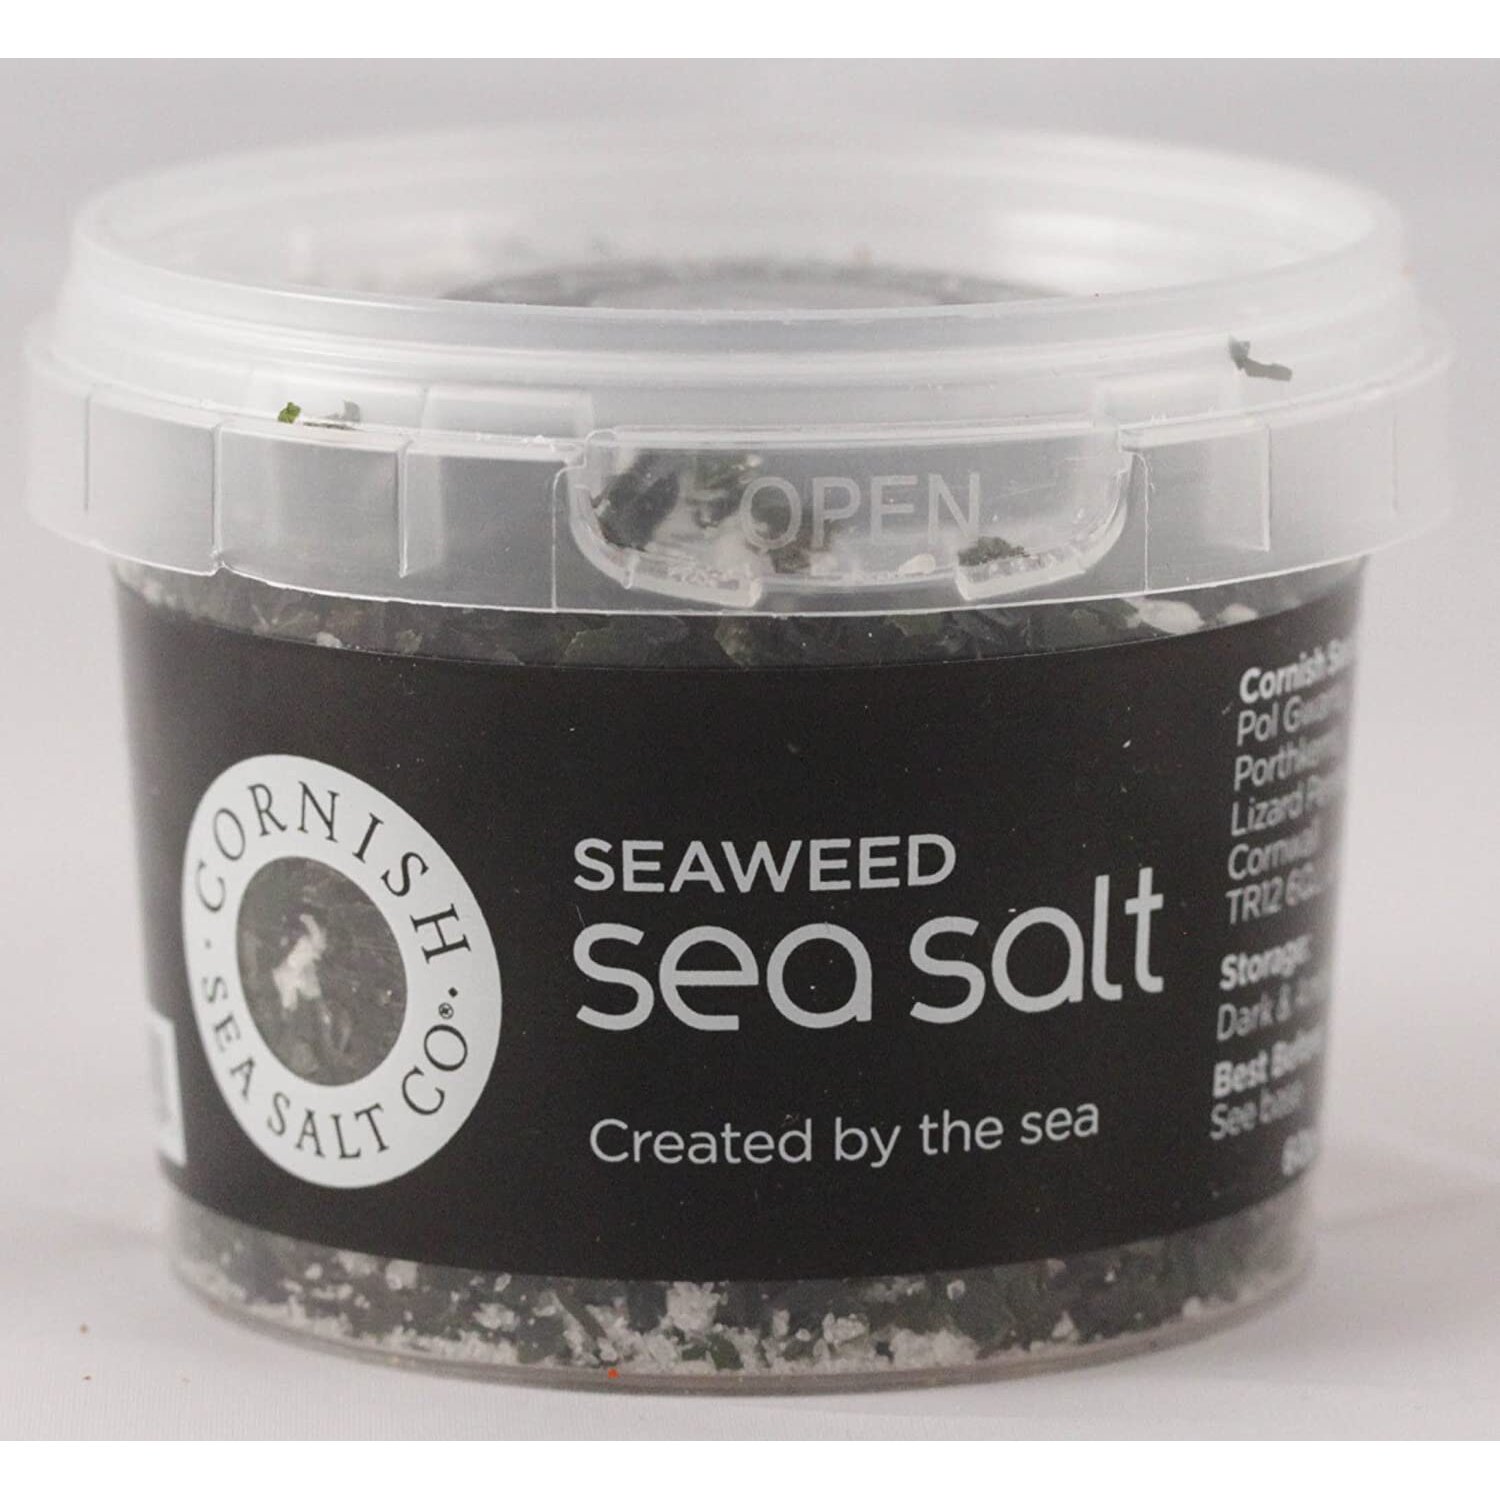 Cornish Sea Salt - Seaweed - 60G - Tub